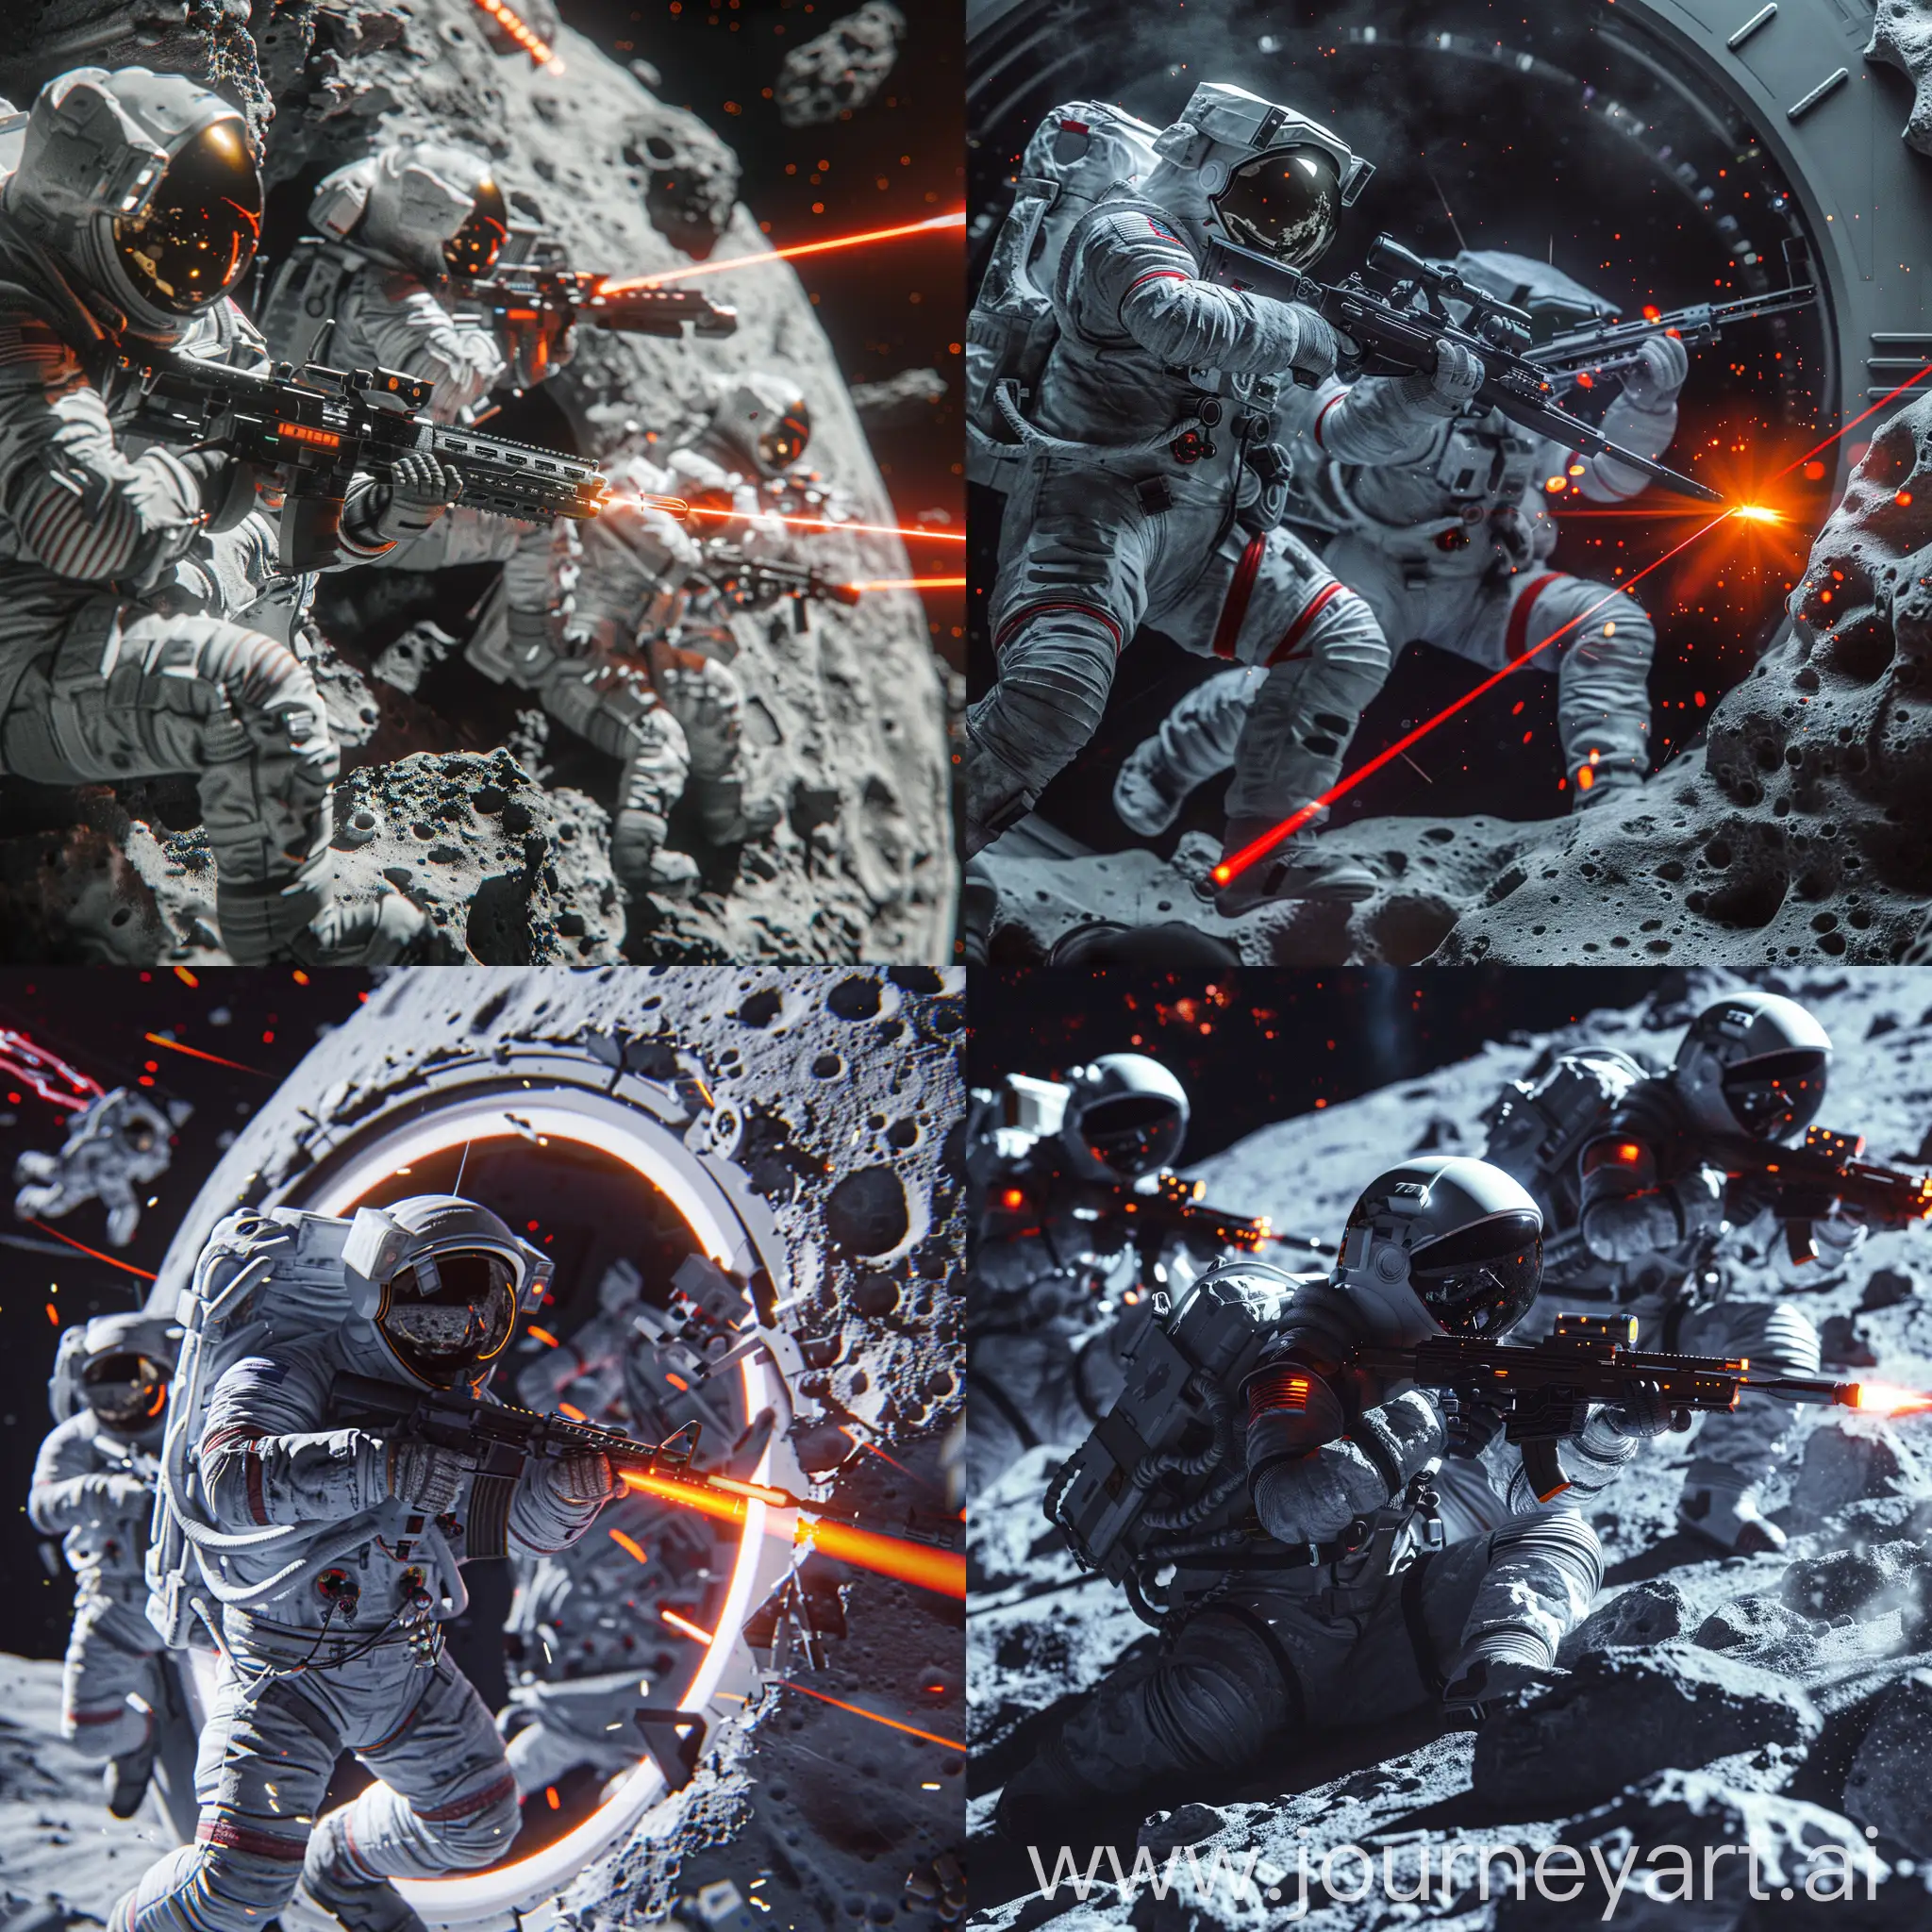 科幻战斗场景，宇航员在月球基地内，携带高科技自动步枪交火，强烈动态感，新未来主义风格，明亮LED光效与月球昏暗背景对比，寒冷金属色调，局部红橙激光光线，从侧面角度视图，4K超高清质量。